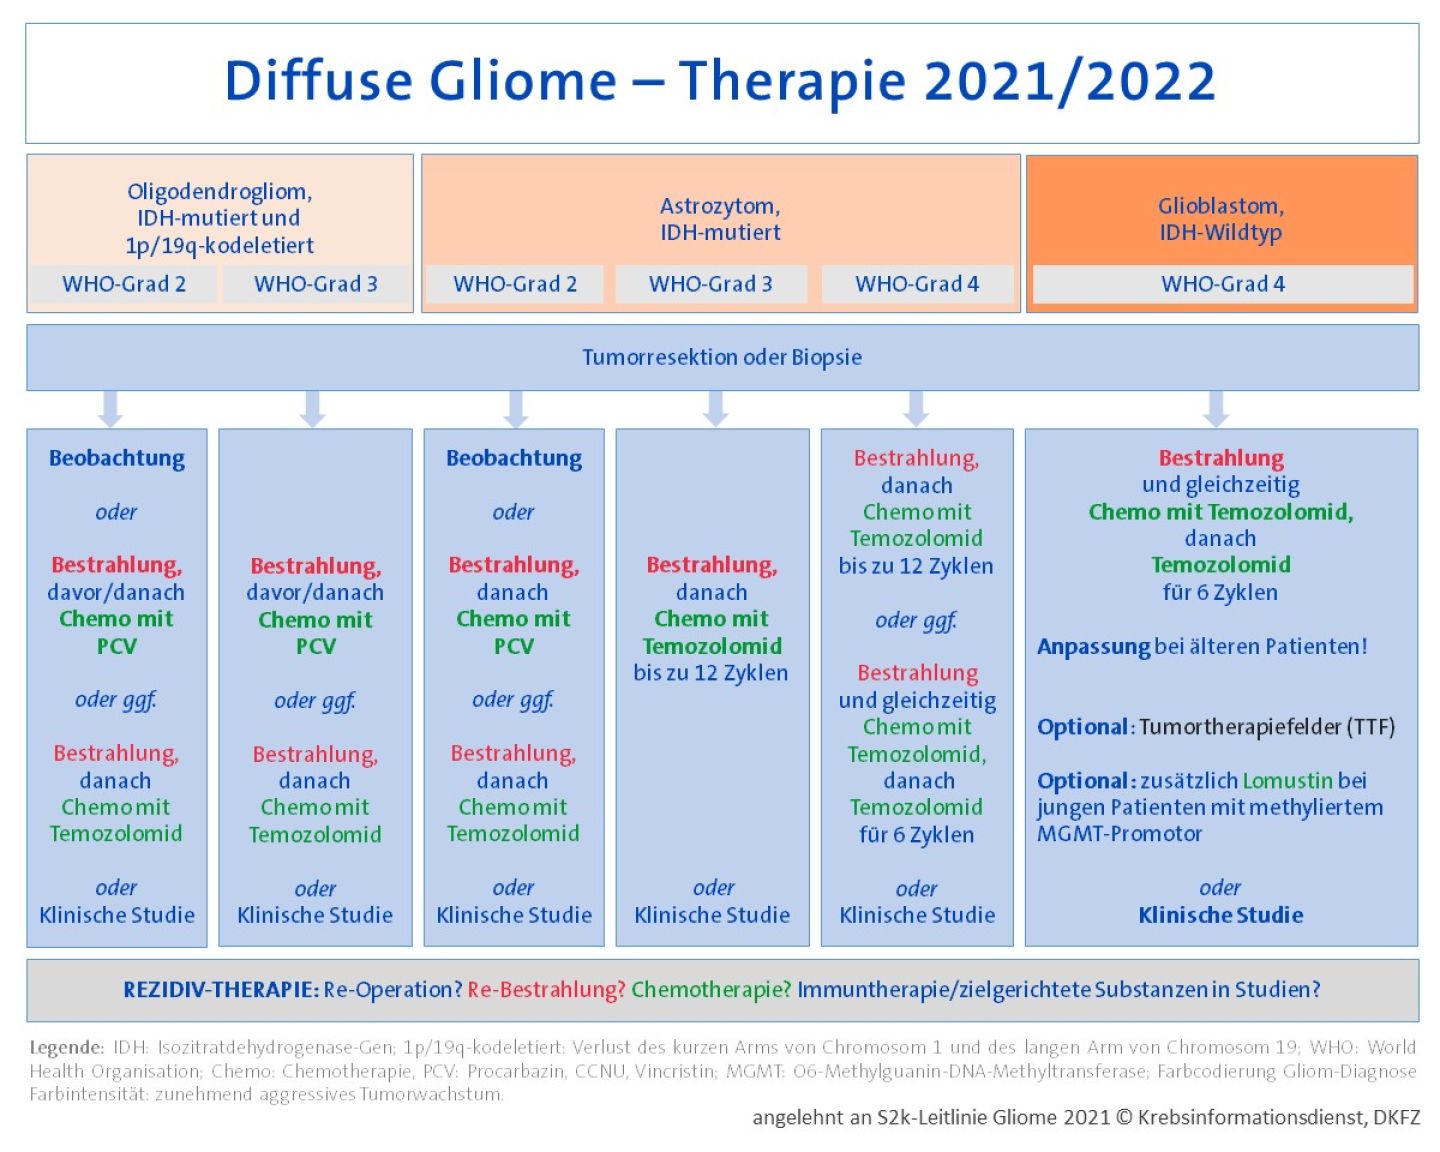 Übersichtstabelle mit Behandlungsoptionen für diffuse Gliome vom Erwachsenentyp, basierend auf der S2k-Leitlinie 2021